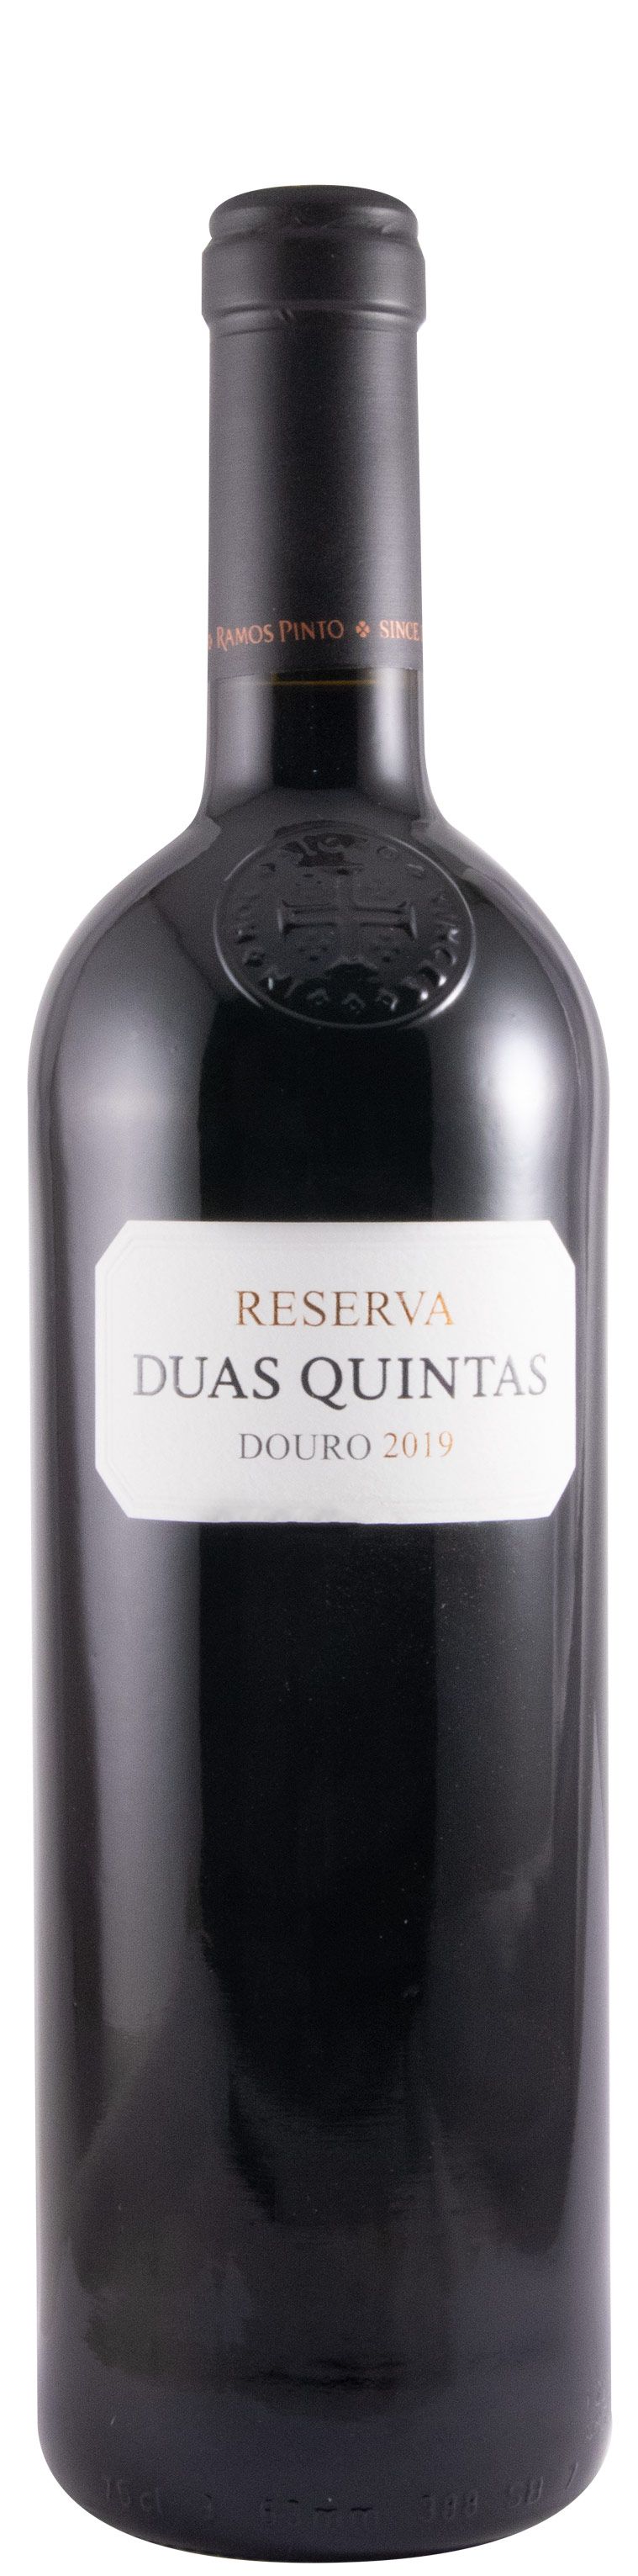 2019 Duas Quintas Reserva red